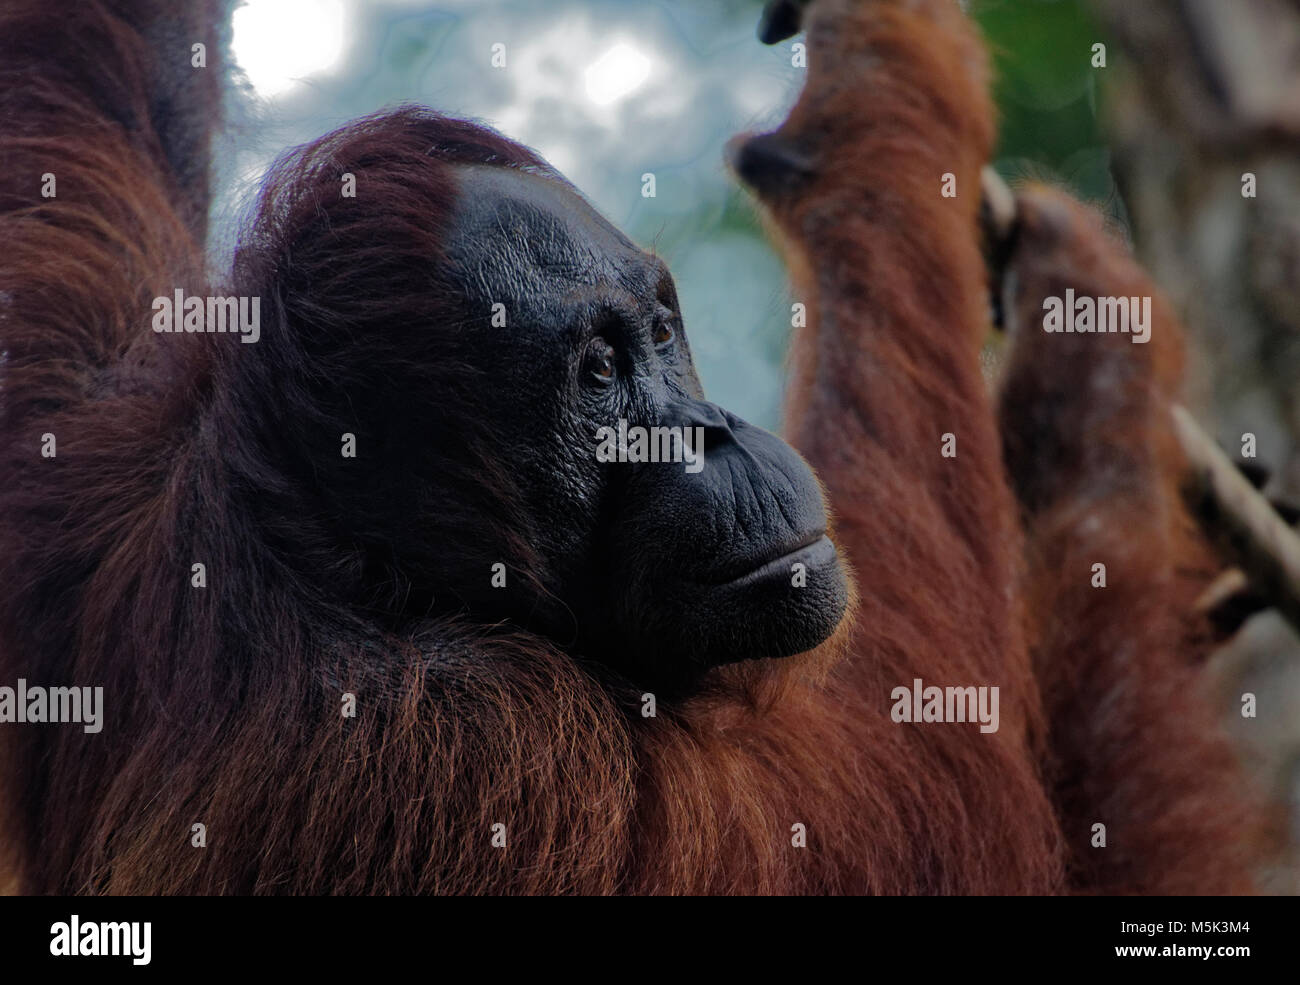 L'orang-outan de Bornéo à Semenggoh Nature Reserve, Kuching, Sarawak, Malaisie, île de Bornéo Banque D'Images